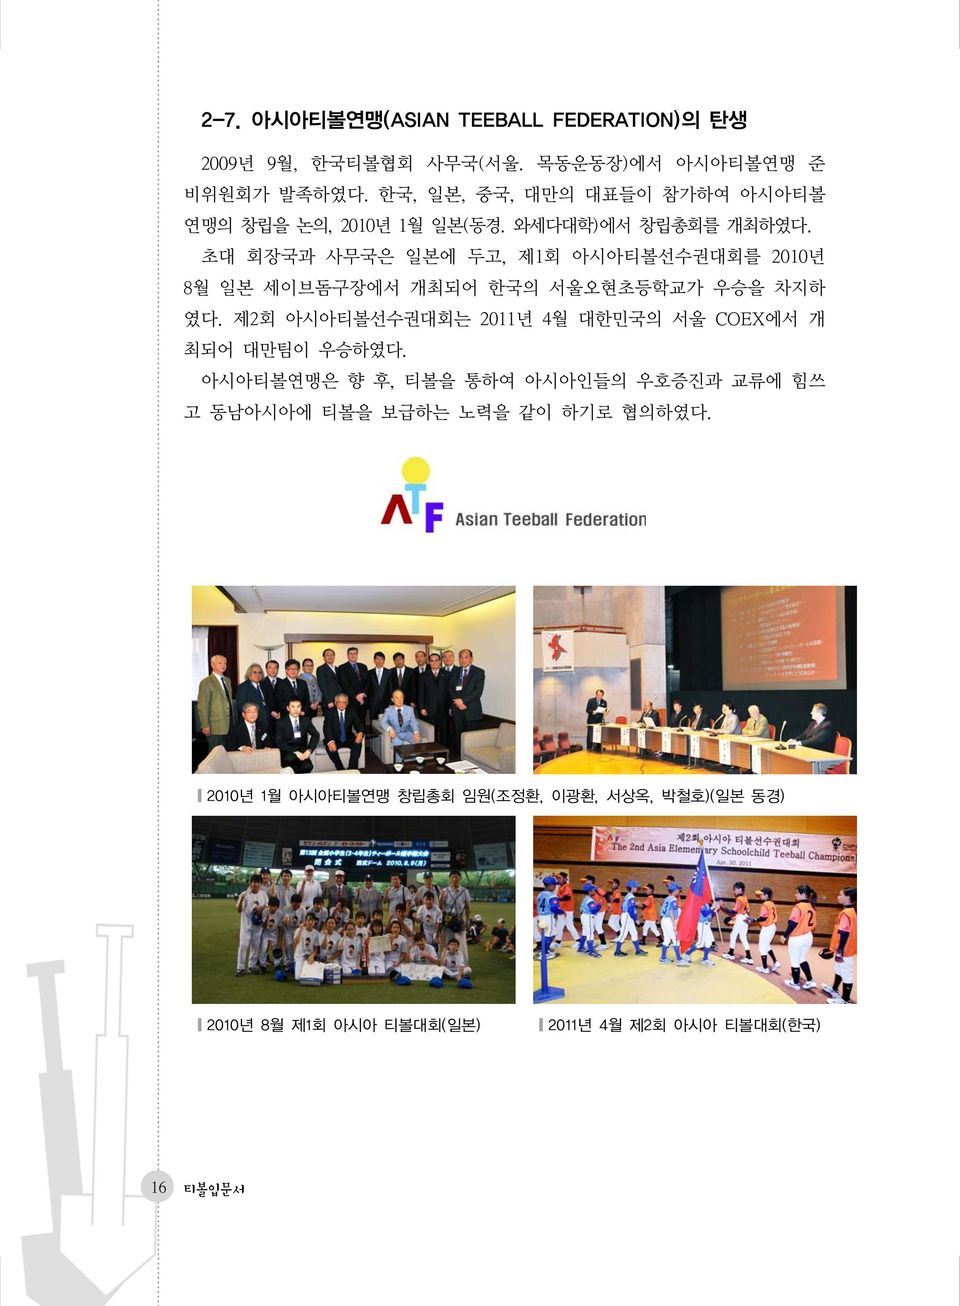 초대 회장국과 사무국은 일본에 두고, 제1회 아시아티볼선수권대회를 2010년 8월 일본 세이브돔구장에서 개최되어 한국의 서울오현초등학교가 우승을 차지하 였다.